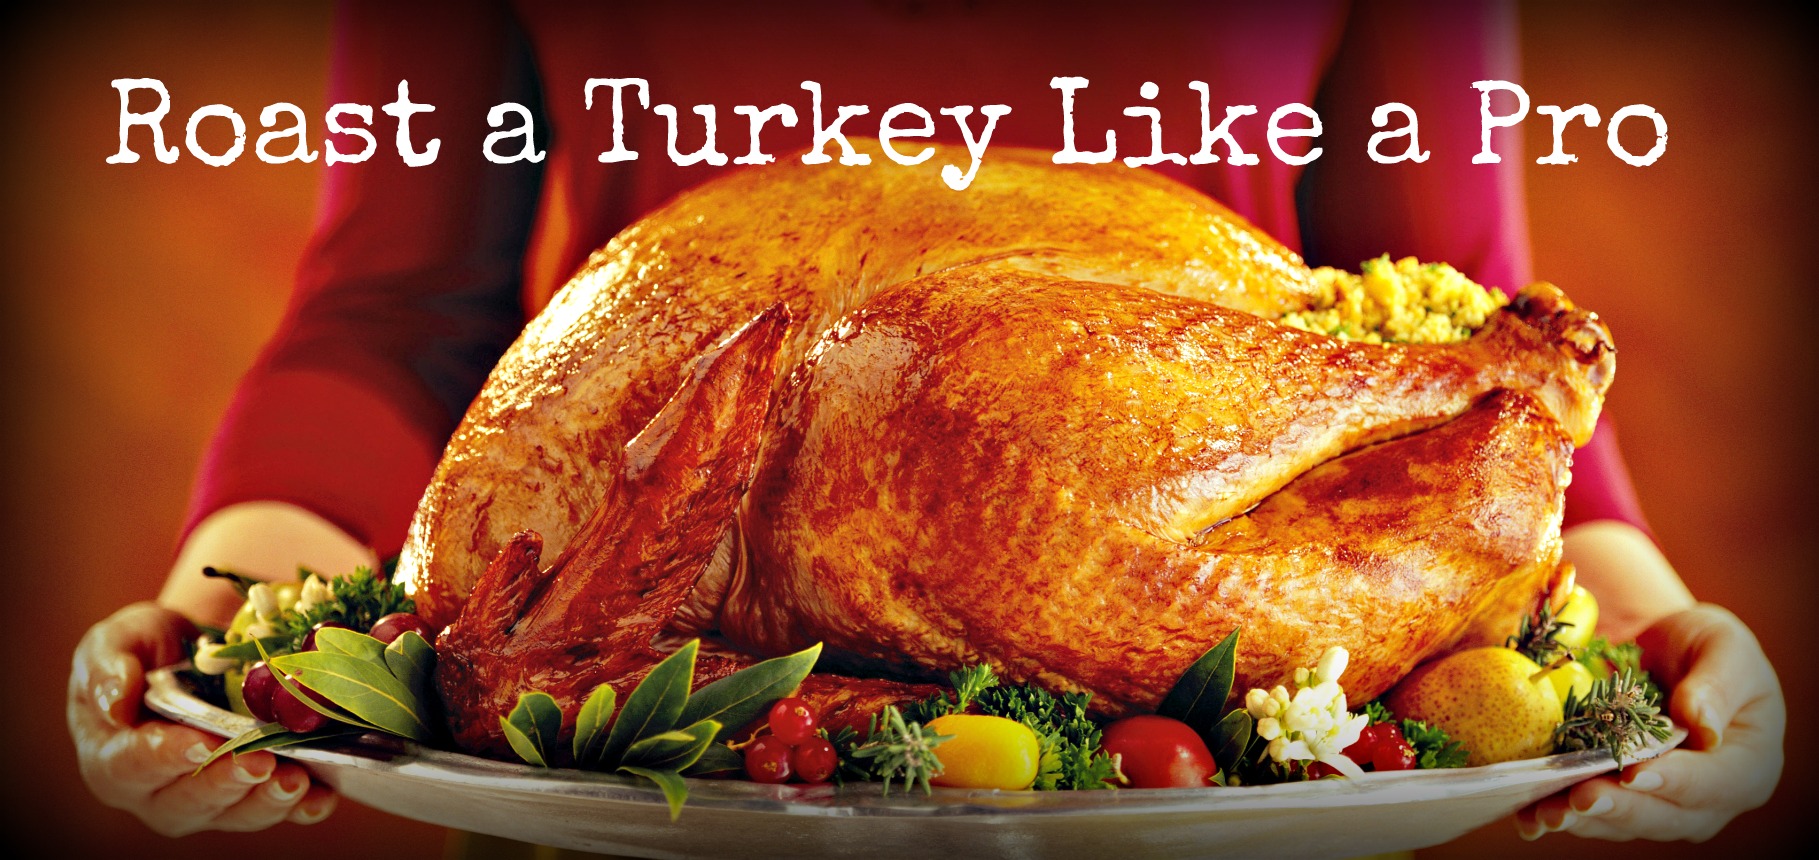 Roast a Turkey like a pro